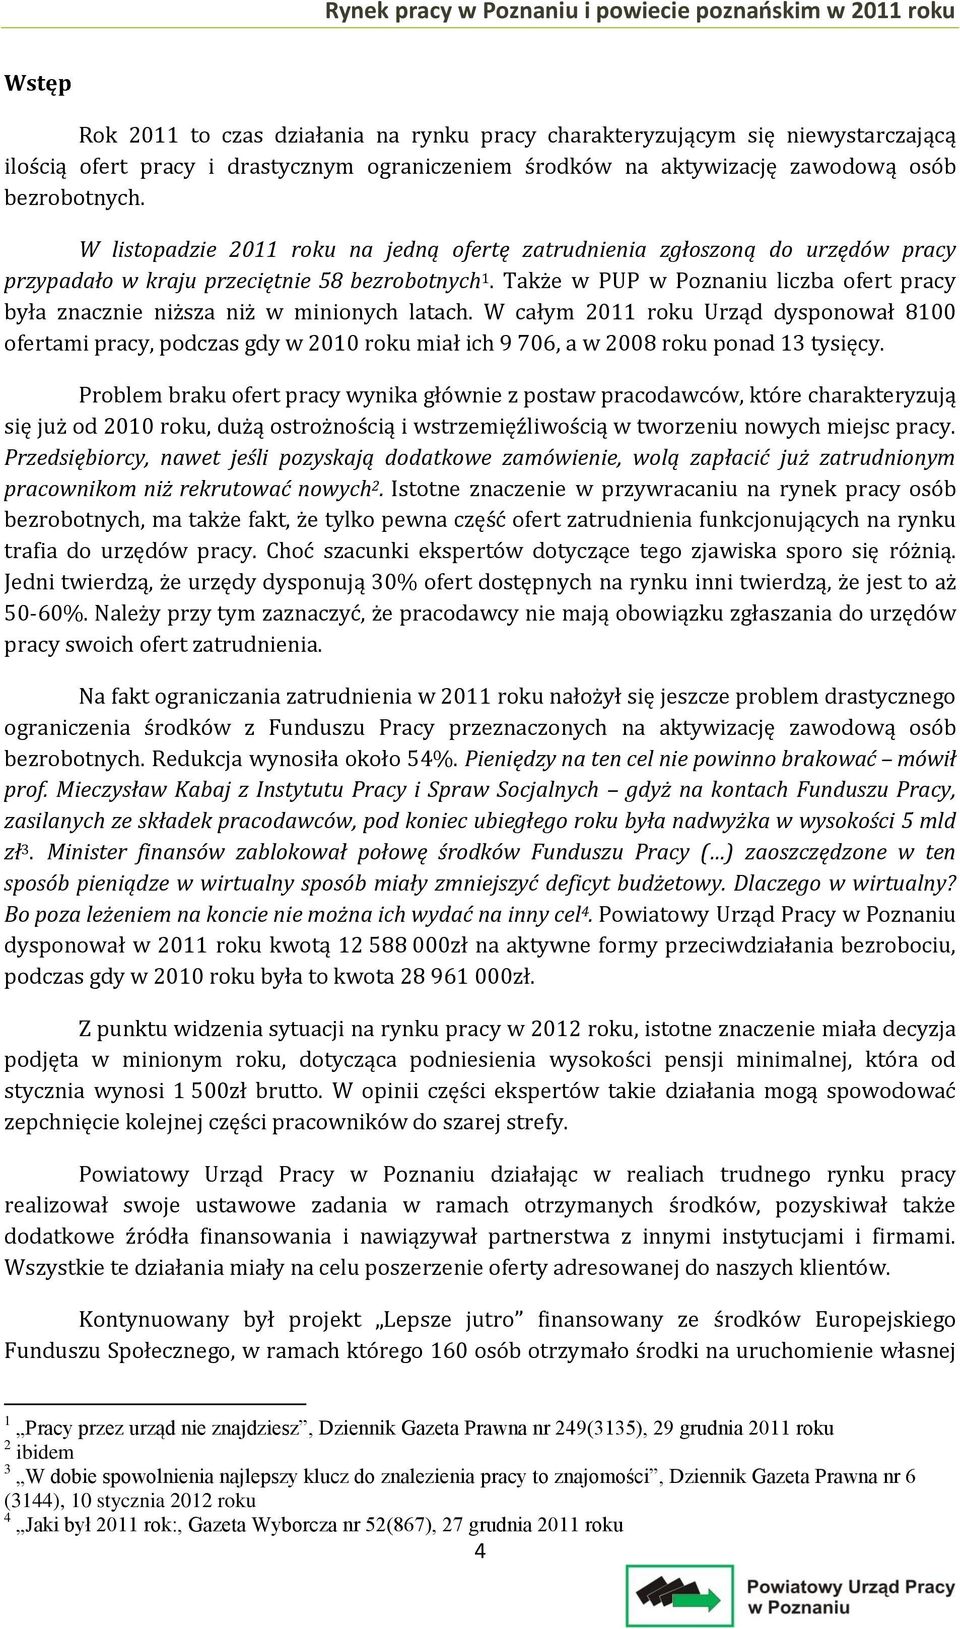 Rynek pracy w Poznaniu i powiecie poznańskim w 2011 roku - PDF Free Download